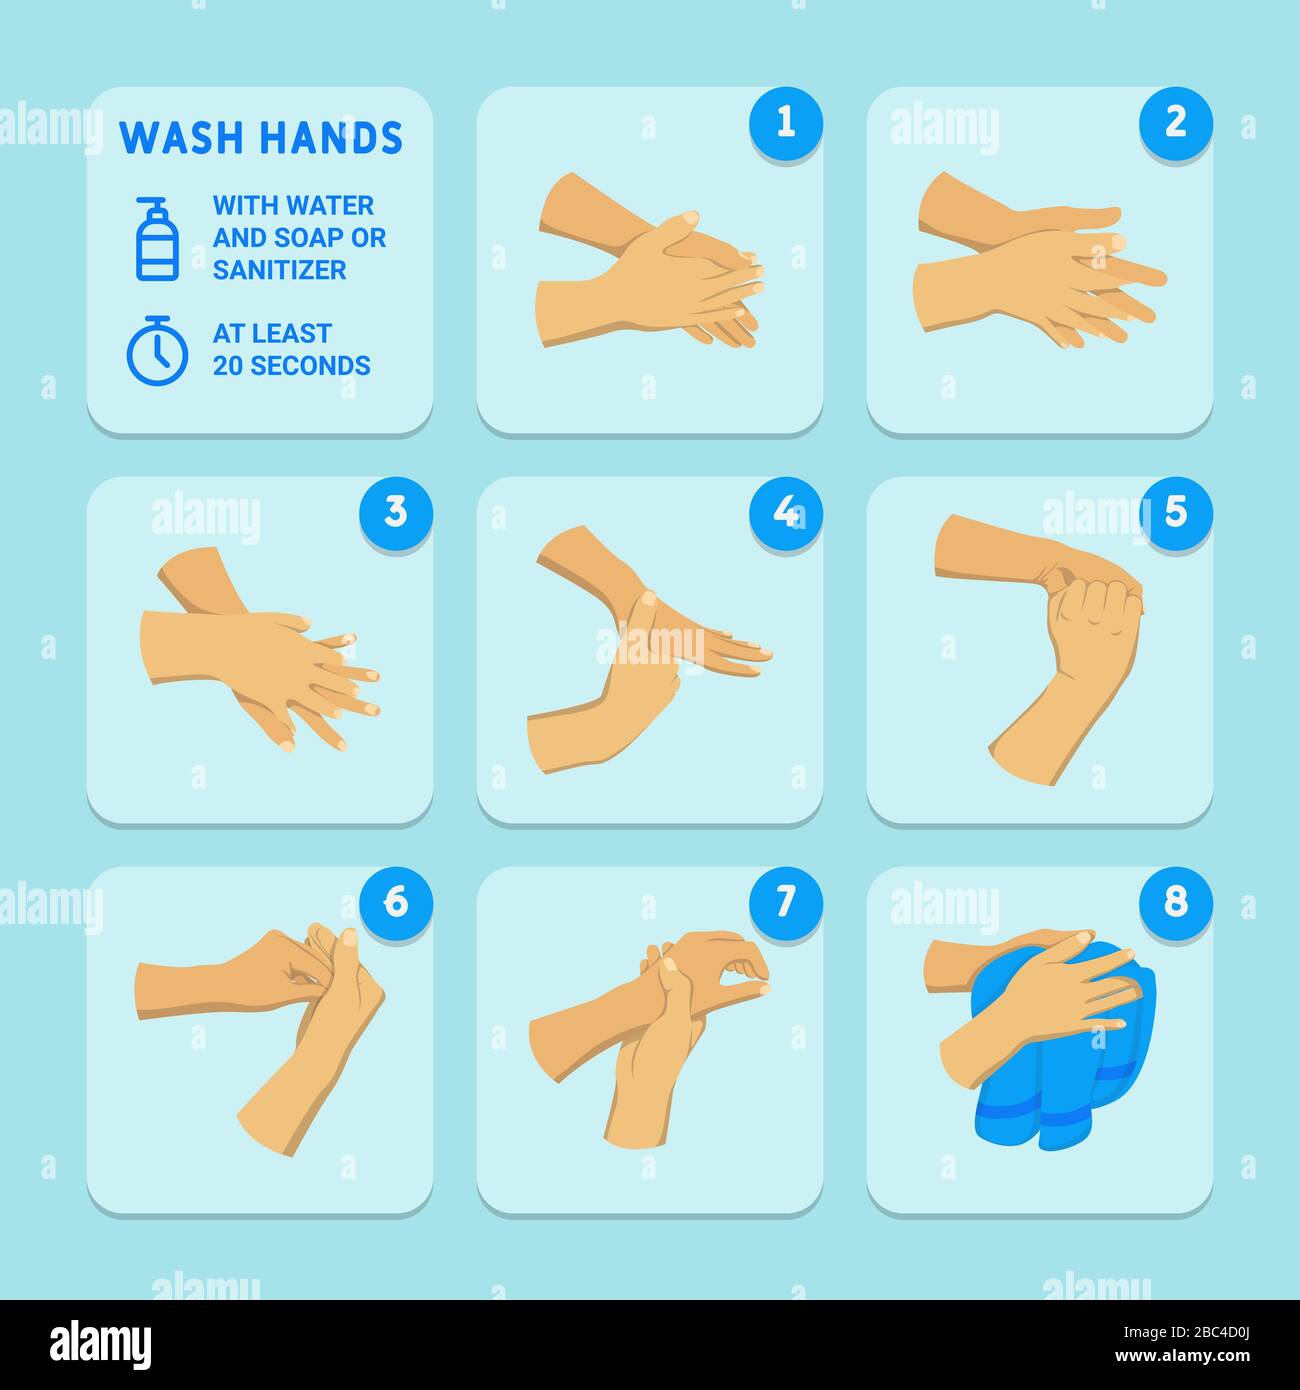 Lavare le mani con acqua e sapone o soluzione igienizzante per almeno 20 secondi. Infografica su come lavarsi le mani. Prevenire virus e batteri. Illustrazione Vettoriale